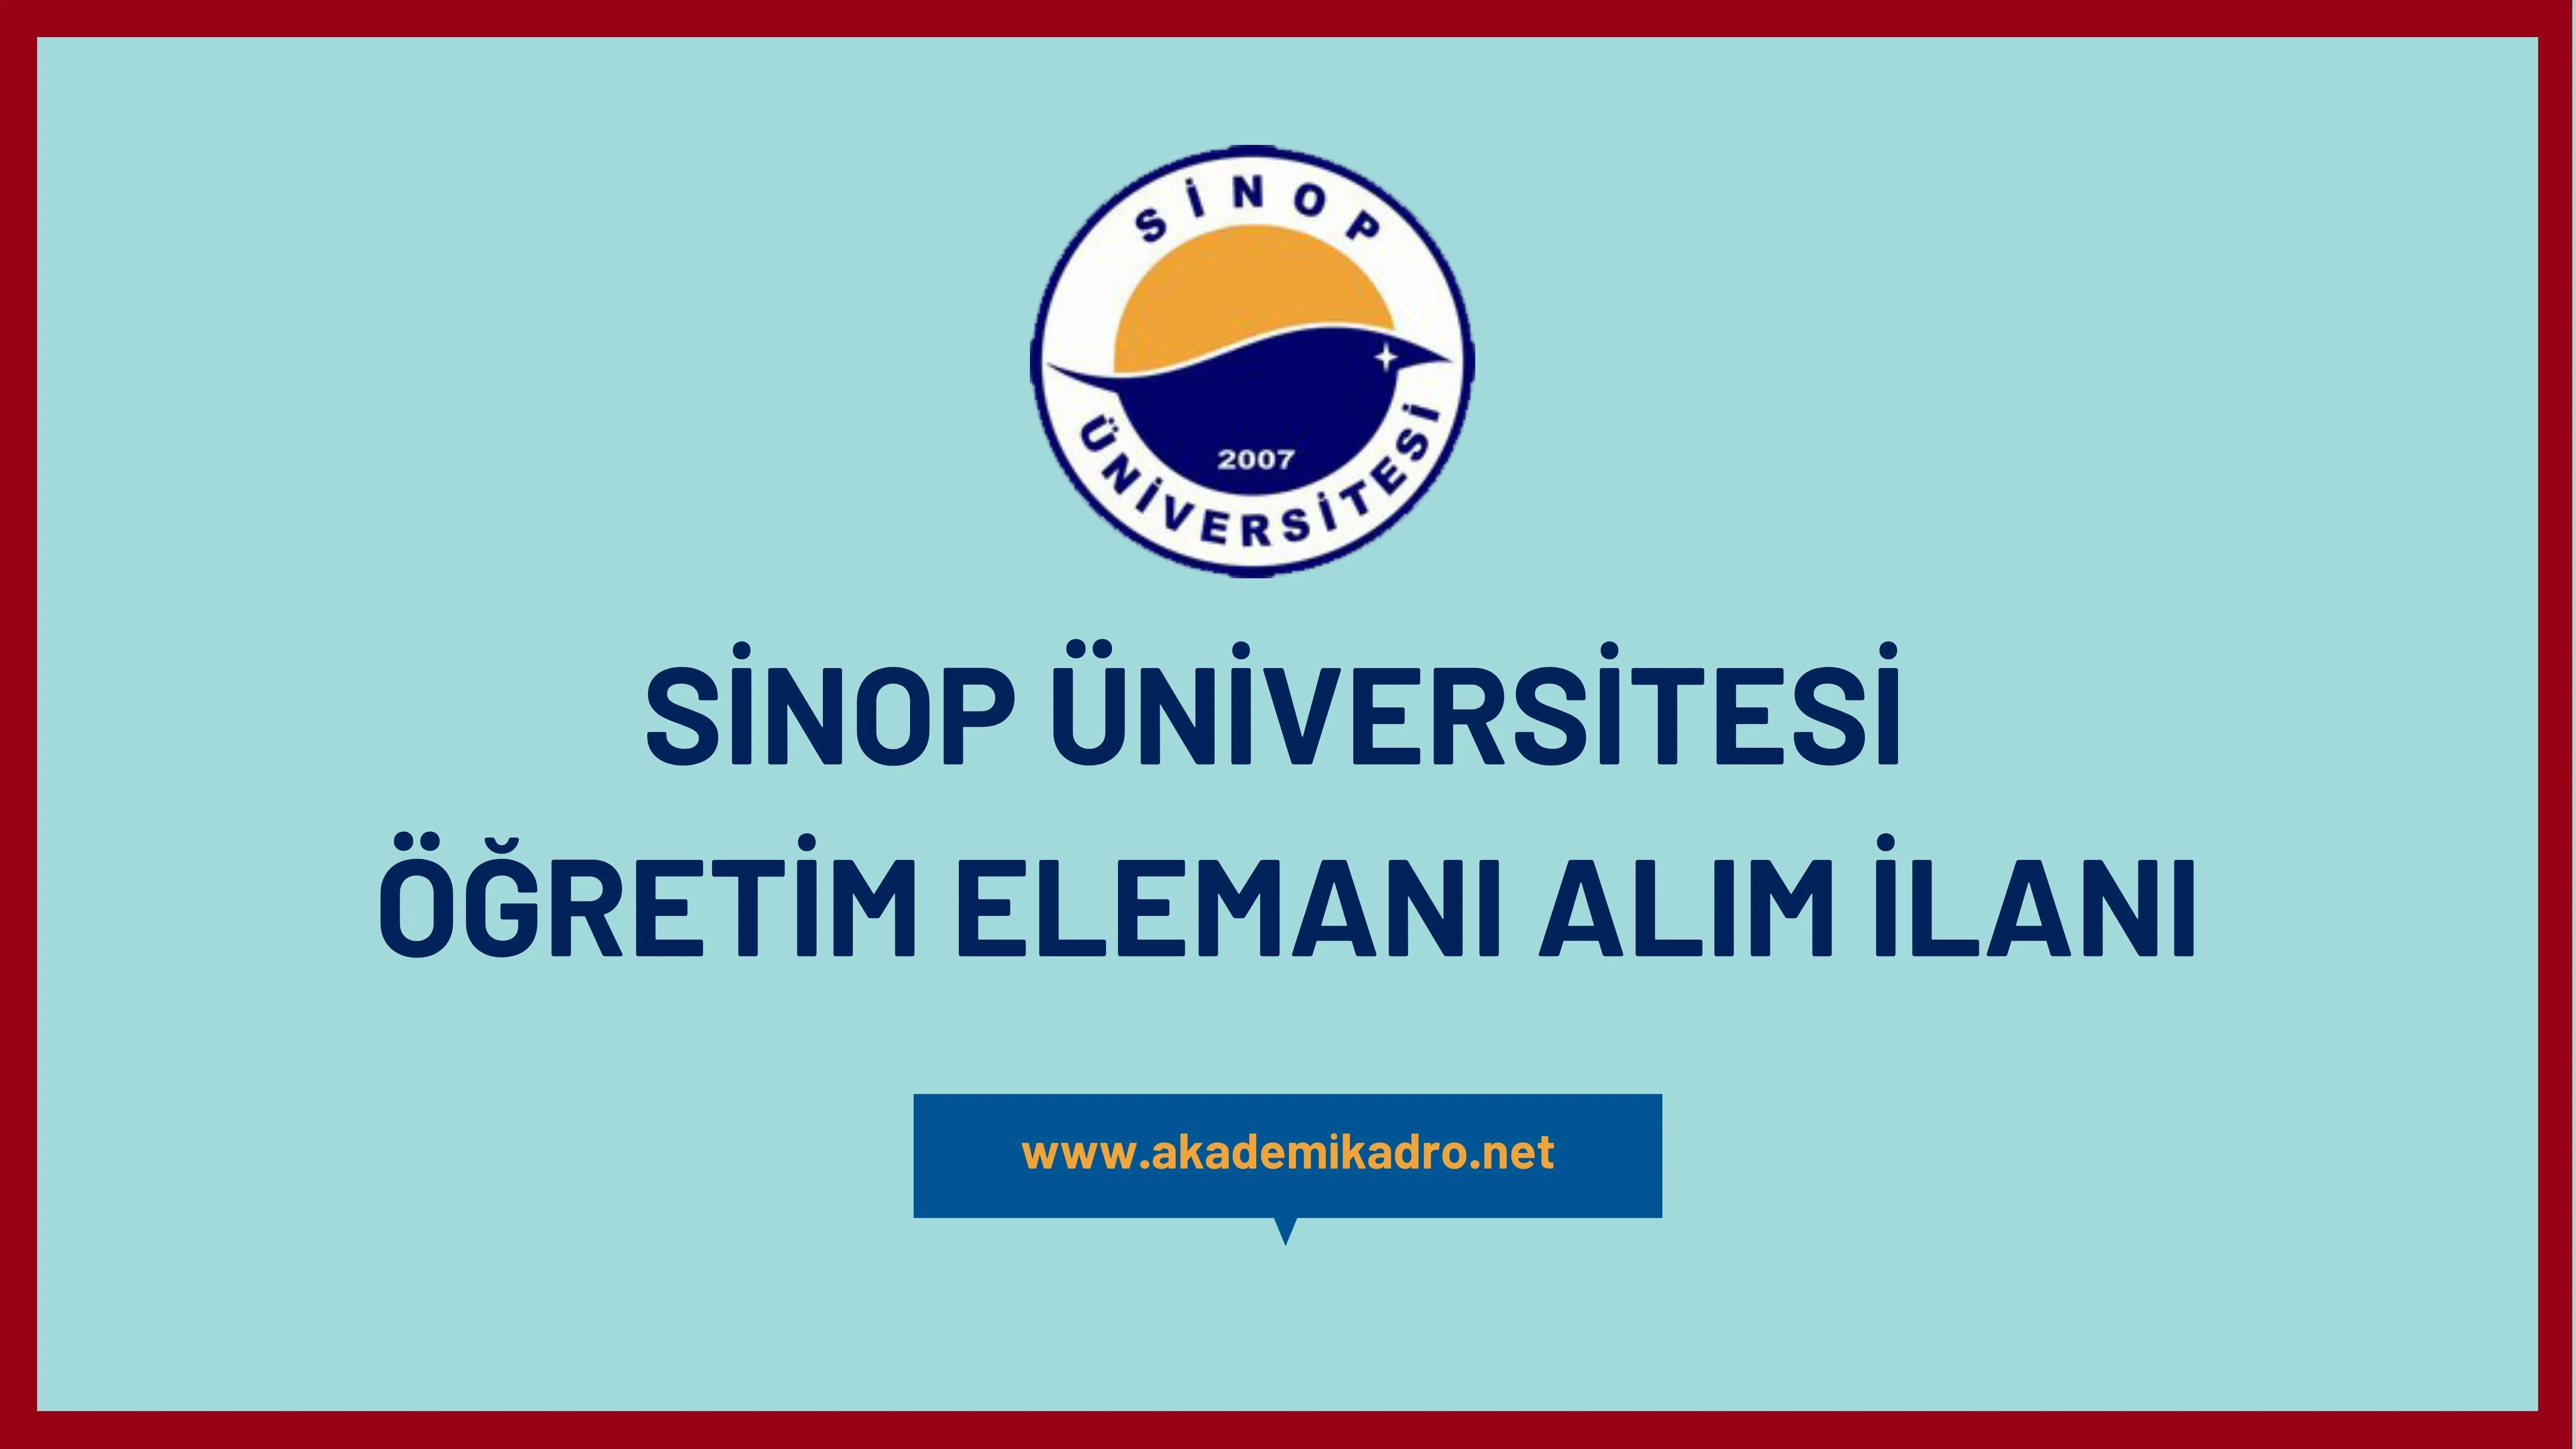 Sinop Üniversitesi 4 Öğretim Görevlisi, 7 Araştırma görevlisi ve birçok alandan 17 Öğretim üyesi alacak.